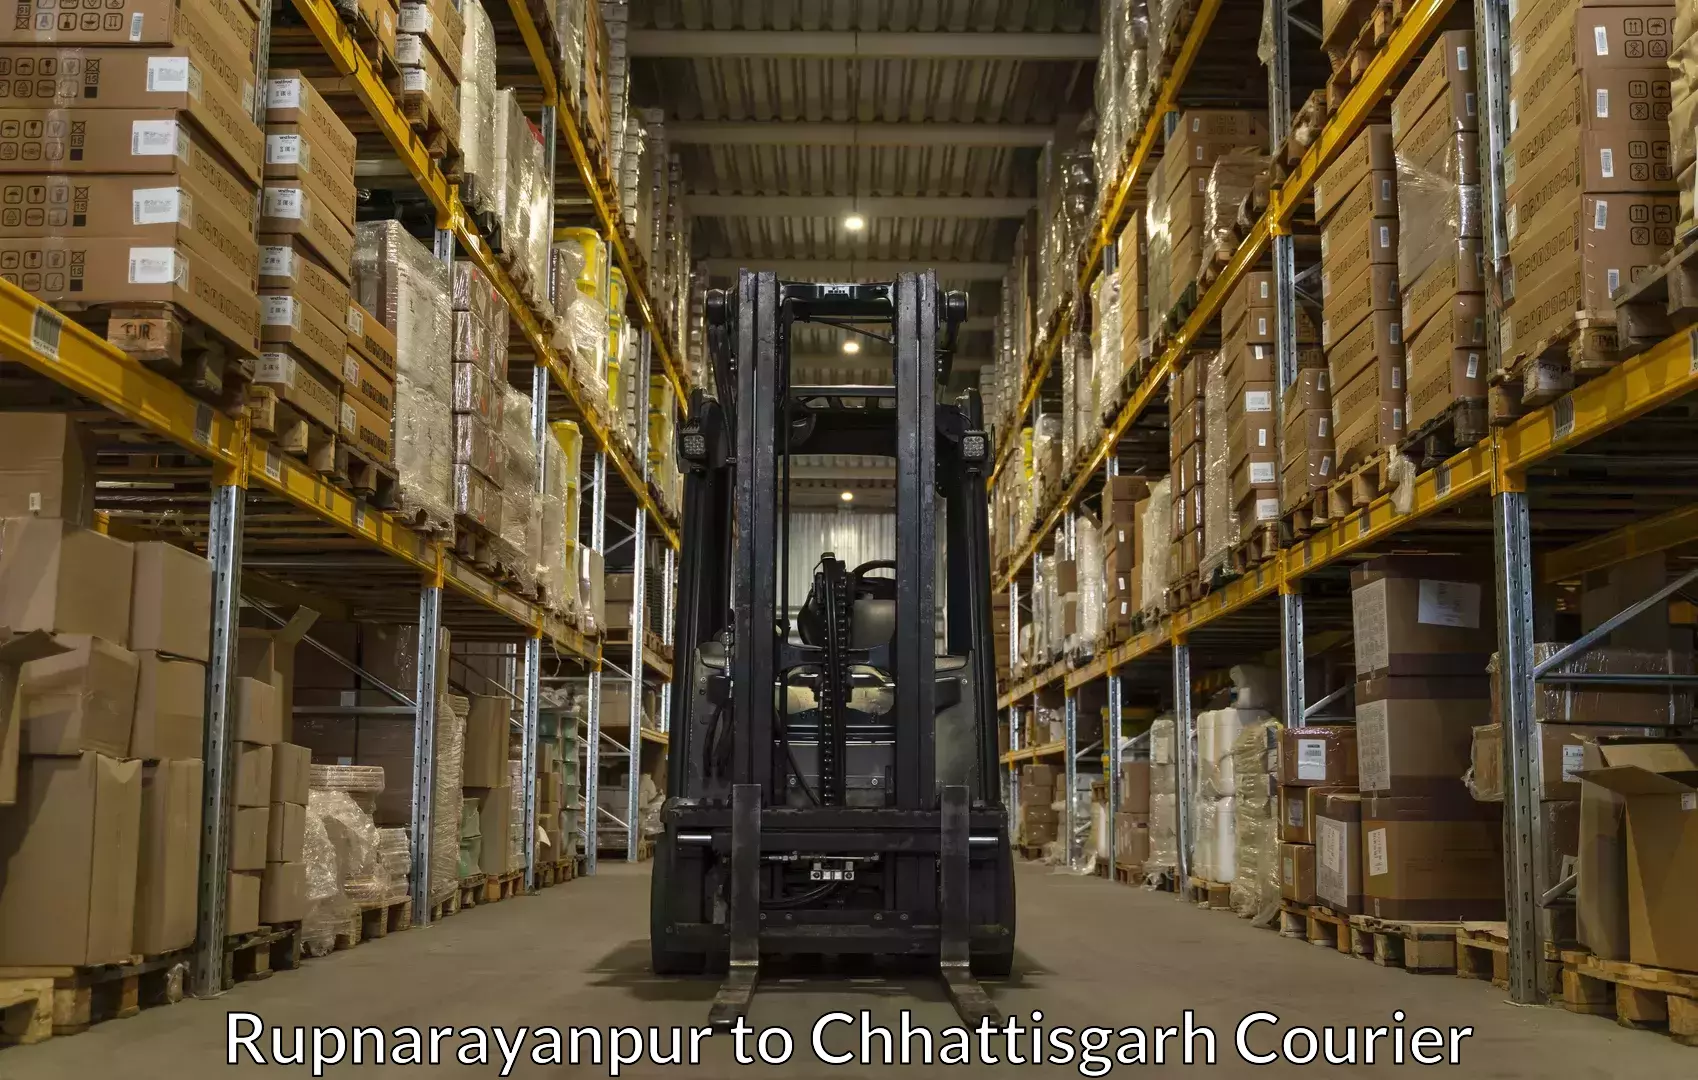 Baggage courier FAQs Rupnarayanpur to Chhattisgarh